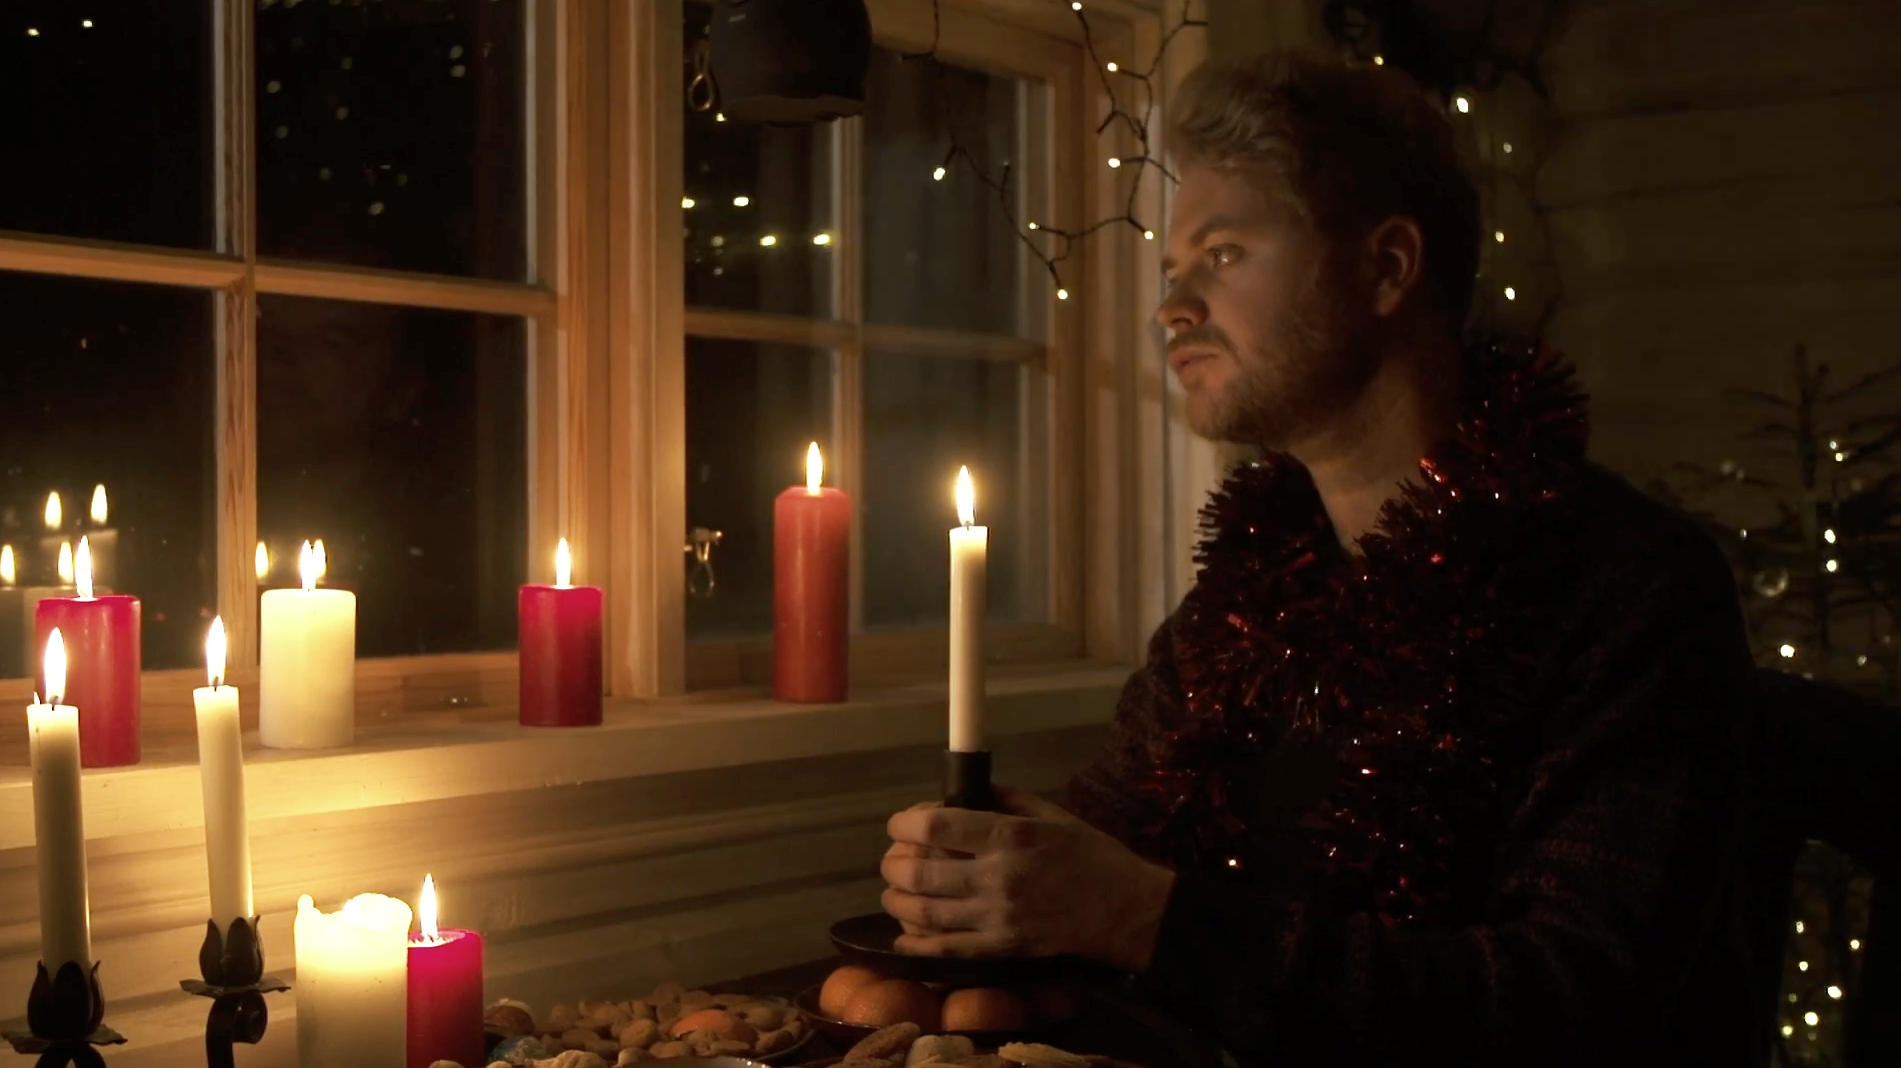 Christian Hjelm skruer helt op for julehyggen i ny musikvideo